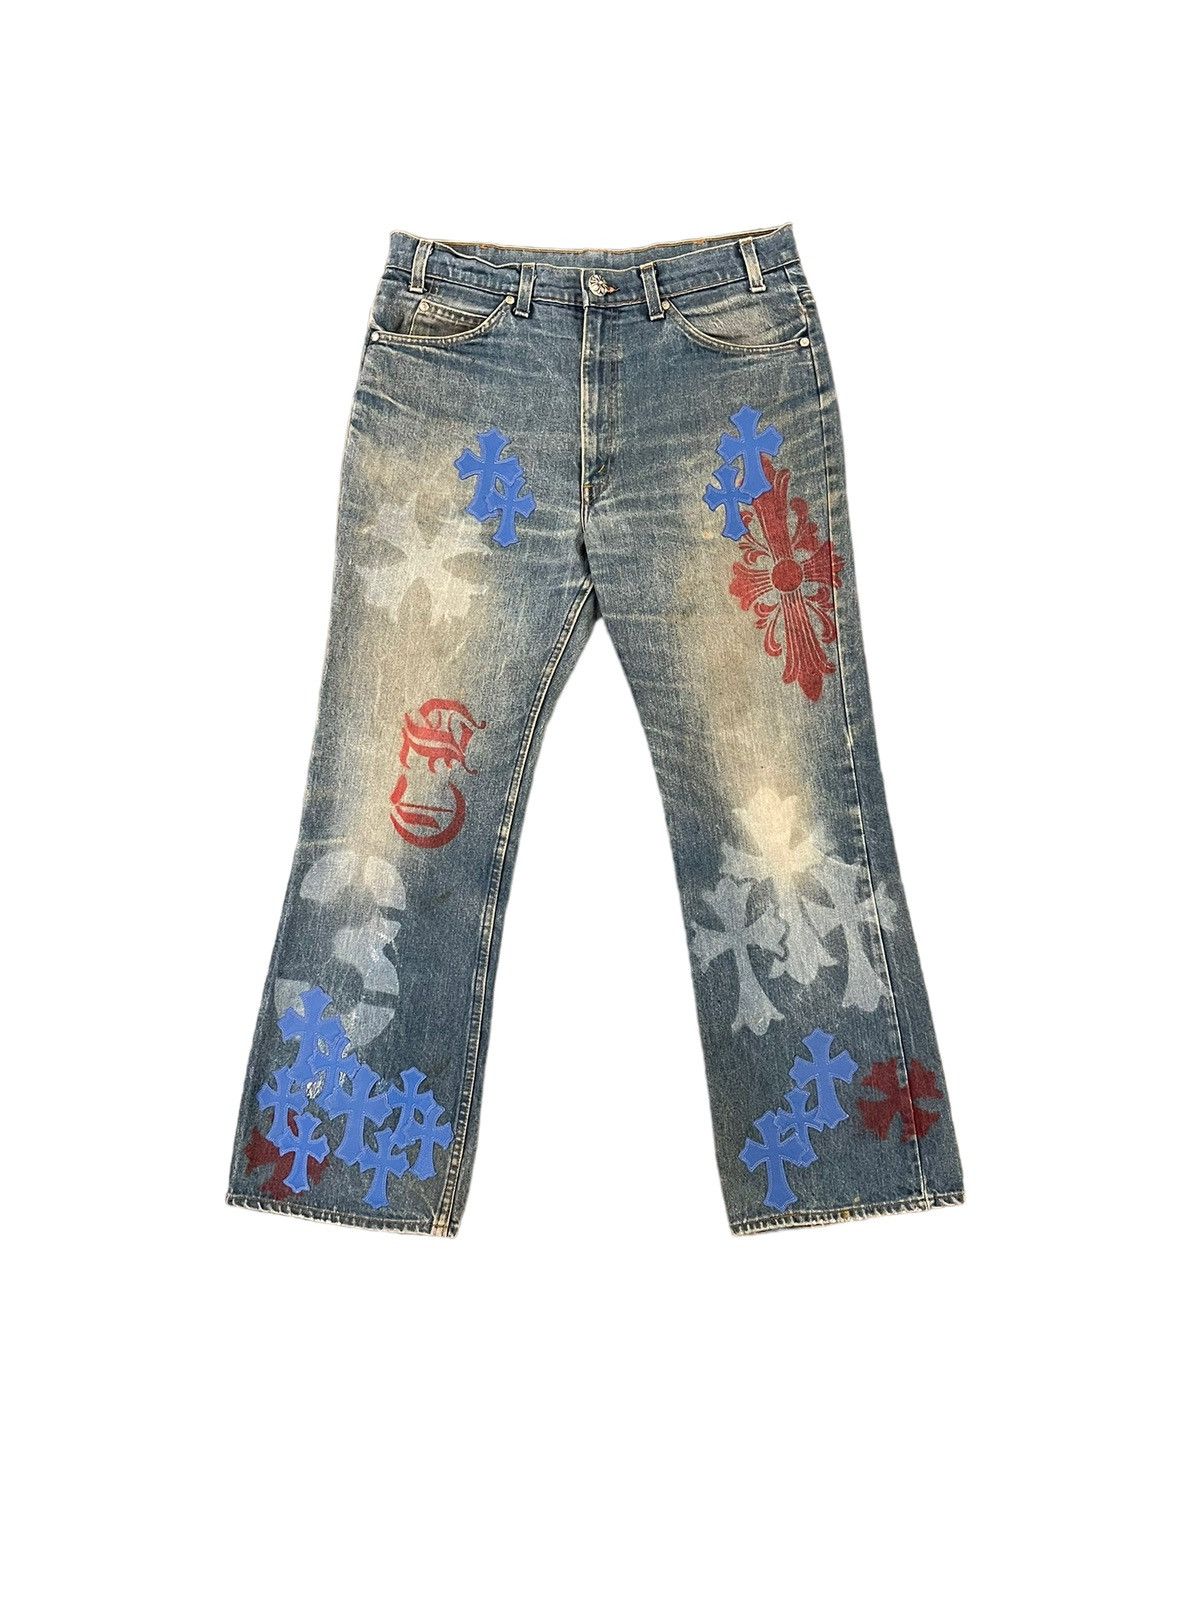 Chrome Hearts Stencil & Blue Cross Patch Levi's Denim Jeans | Grailed